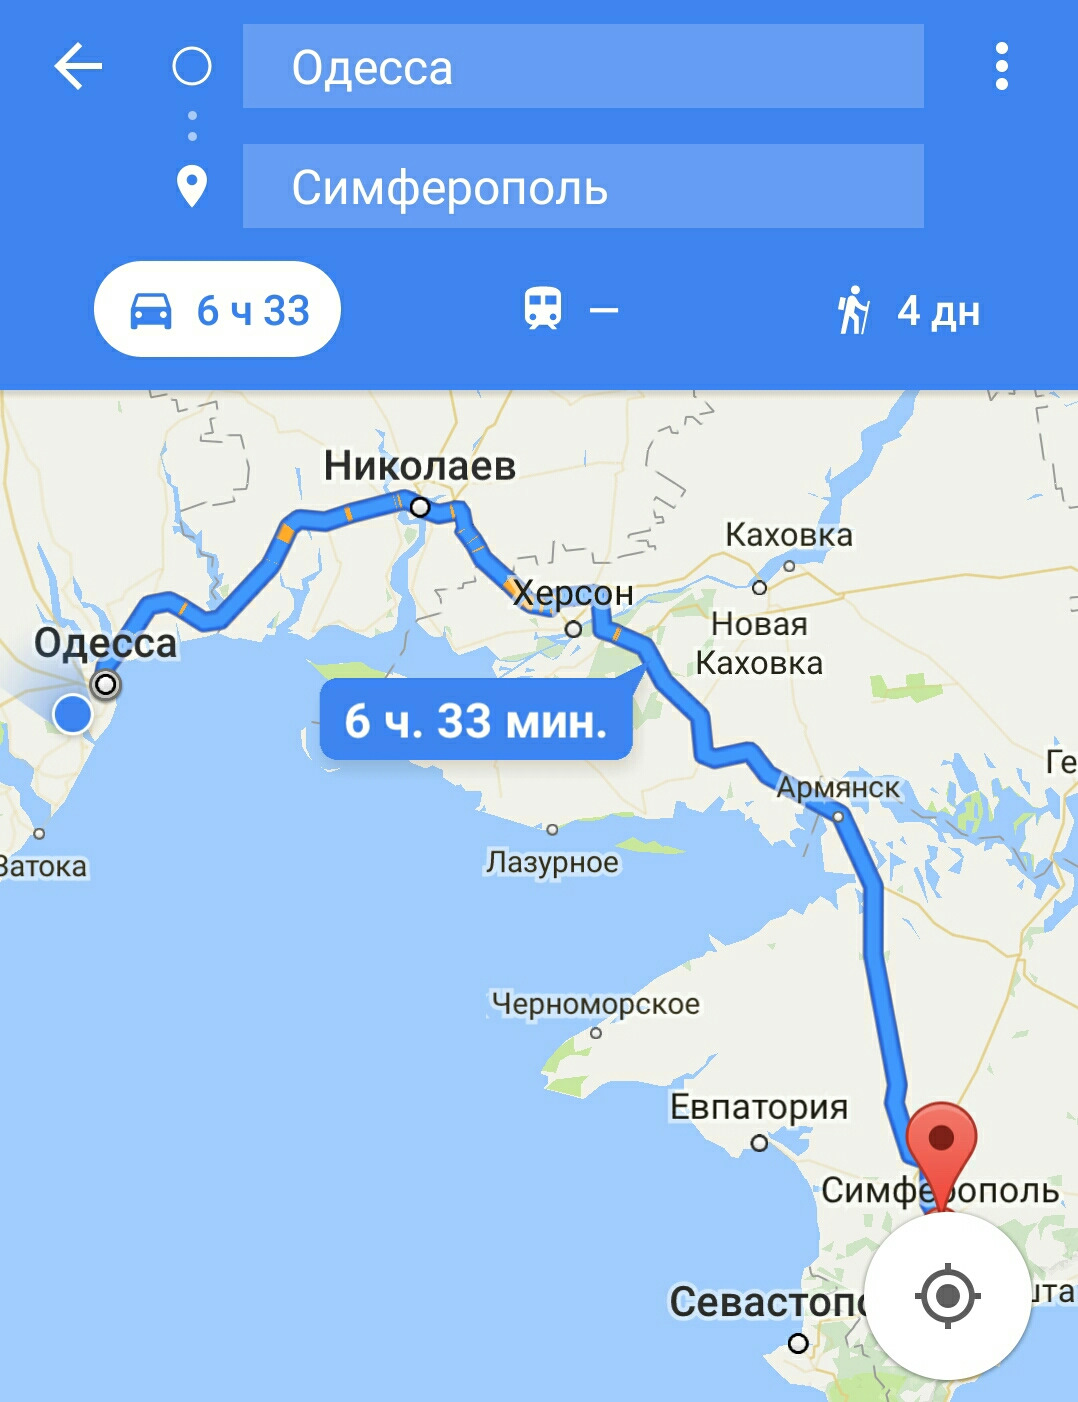 Расстояние до одесского. Расстояние от Симферополя до Одессы. Одесса Симферополь расстояние. Расстояние от Симферополя до Одессы на машине. Маршрут Симферополь Одесса.